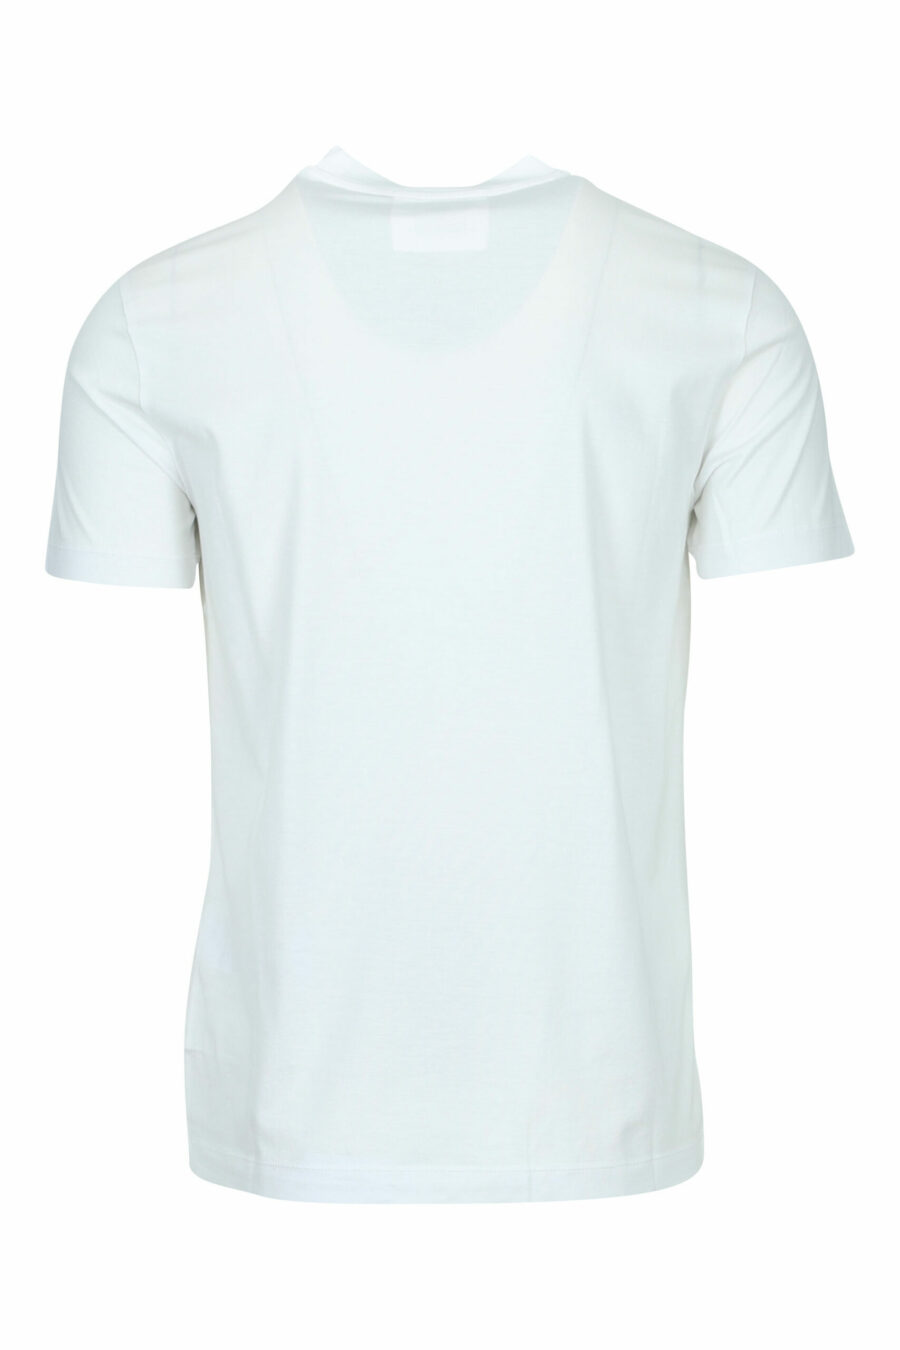 T-shirt branca com minilogo "emporio" - 8059516200147 1 scaled